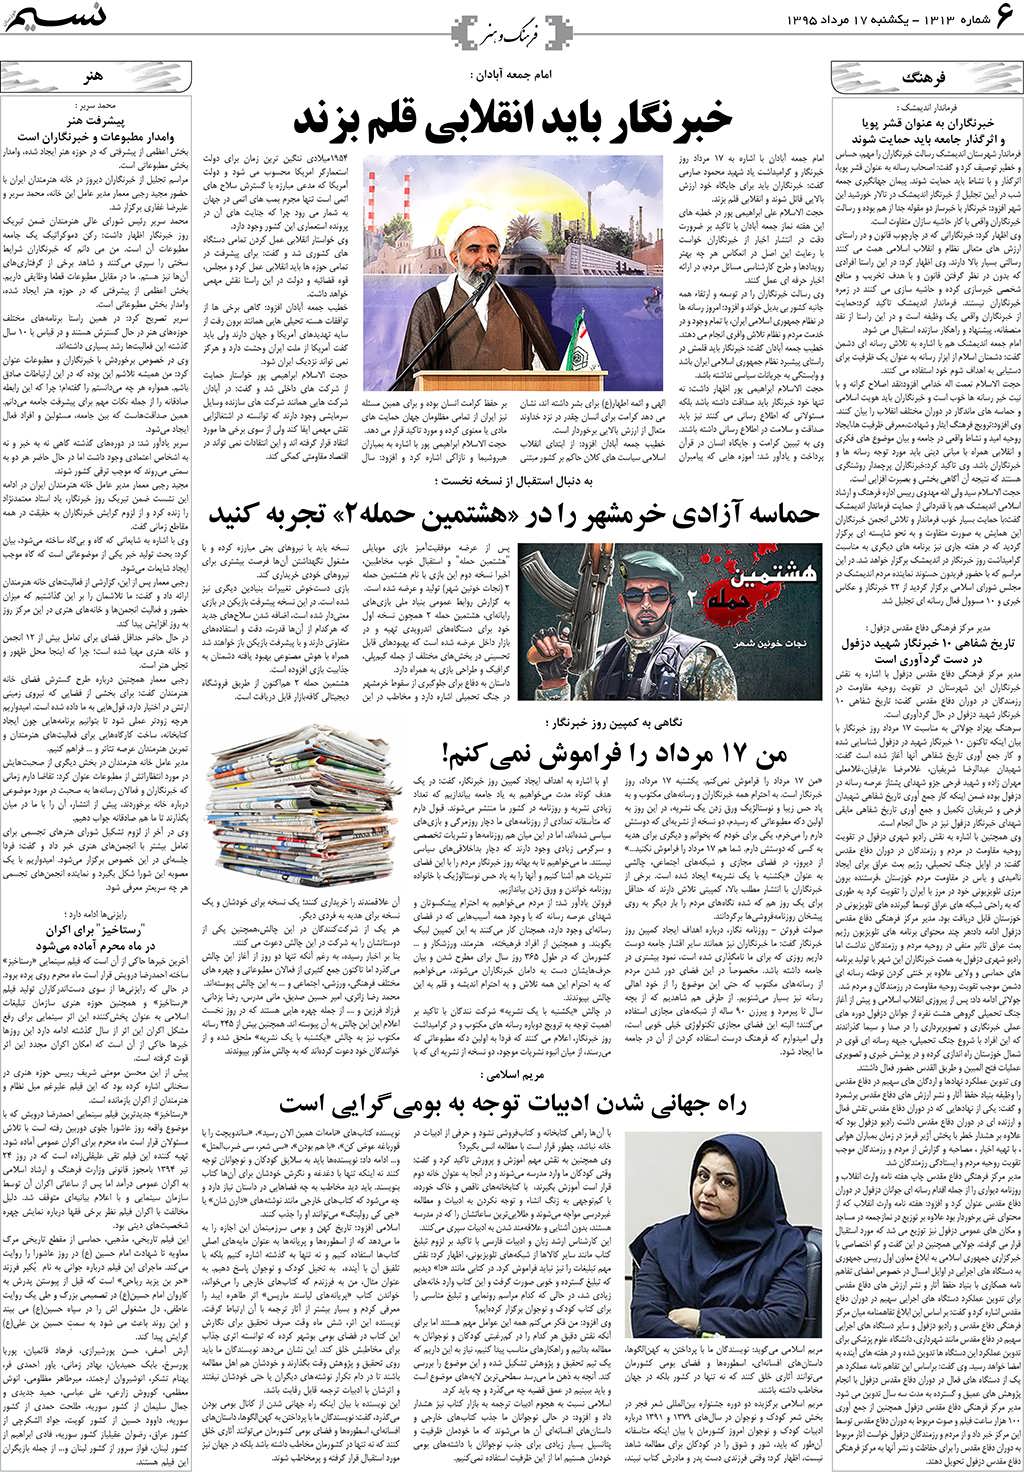 صفحه فرهنگ و هنر روزنامه نسیم شماره 1313